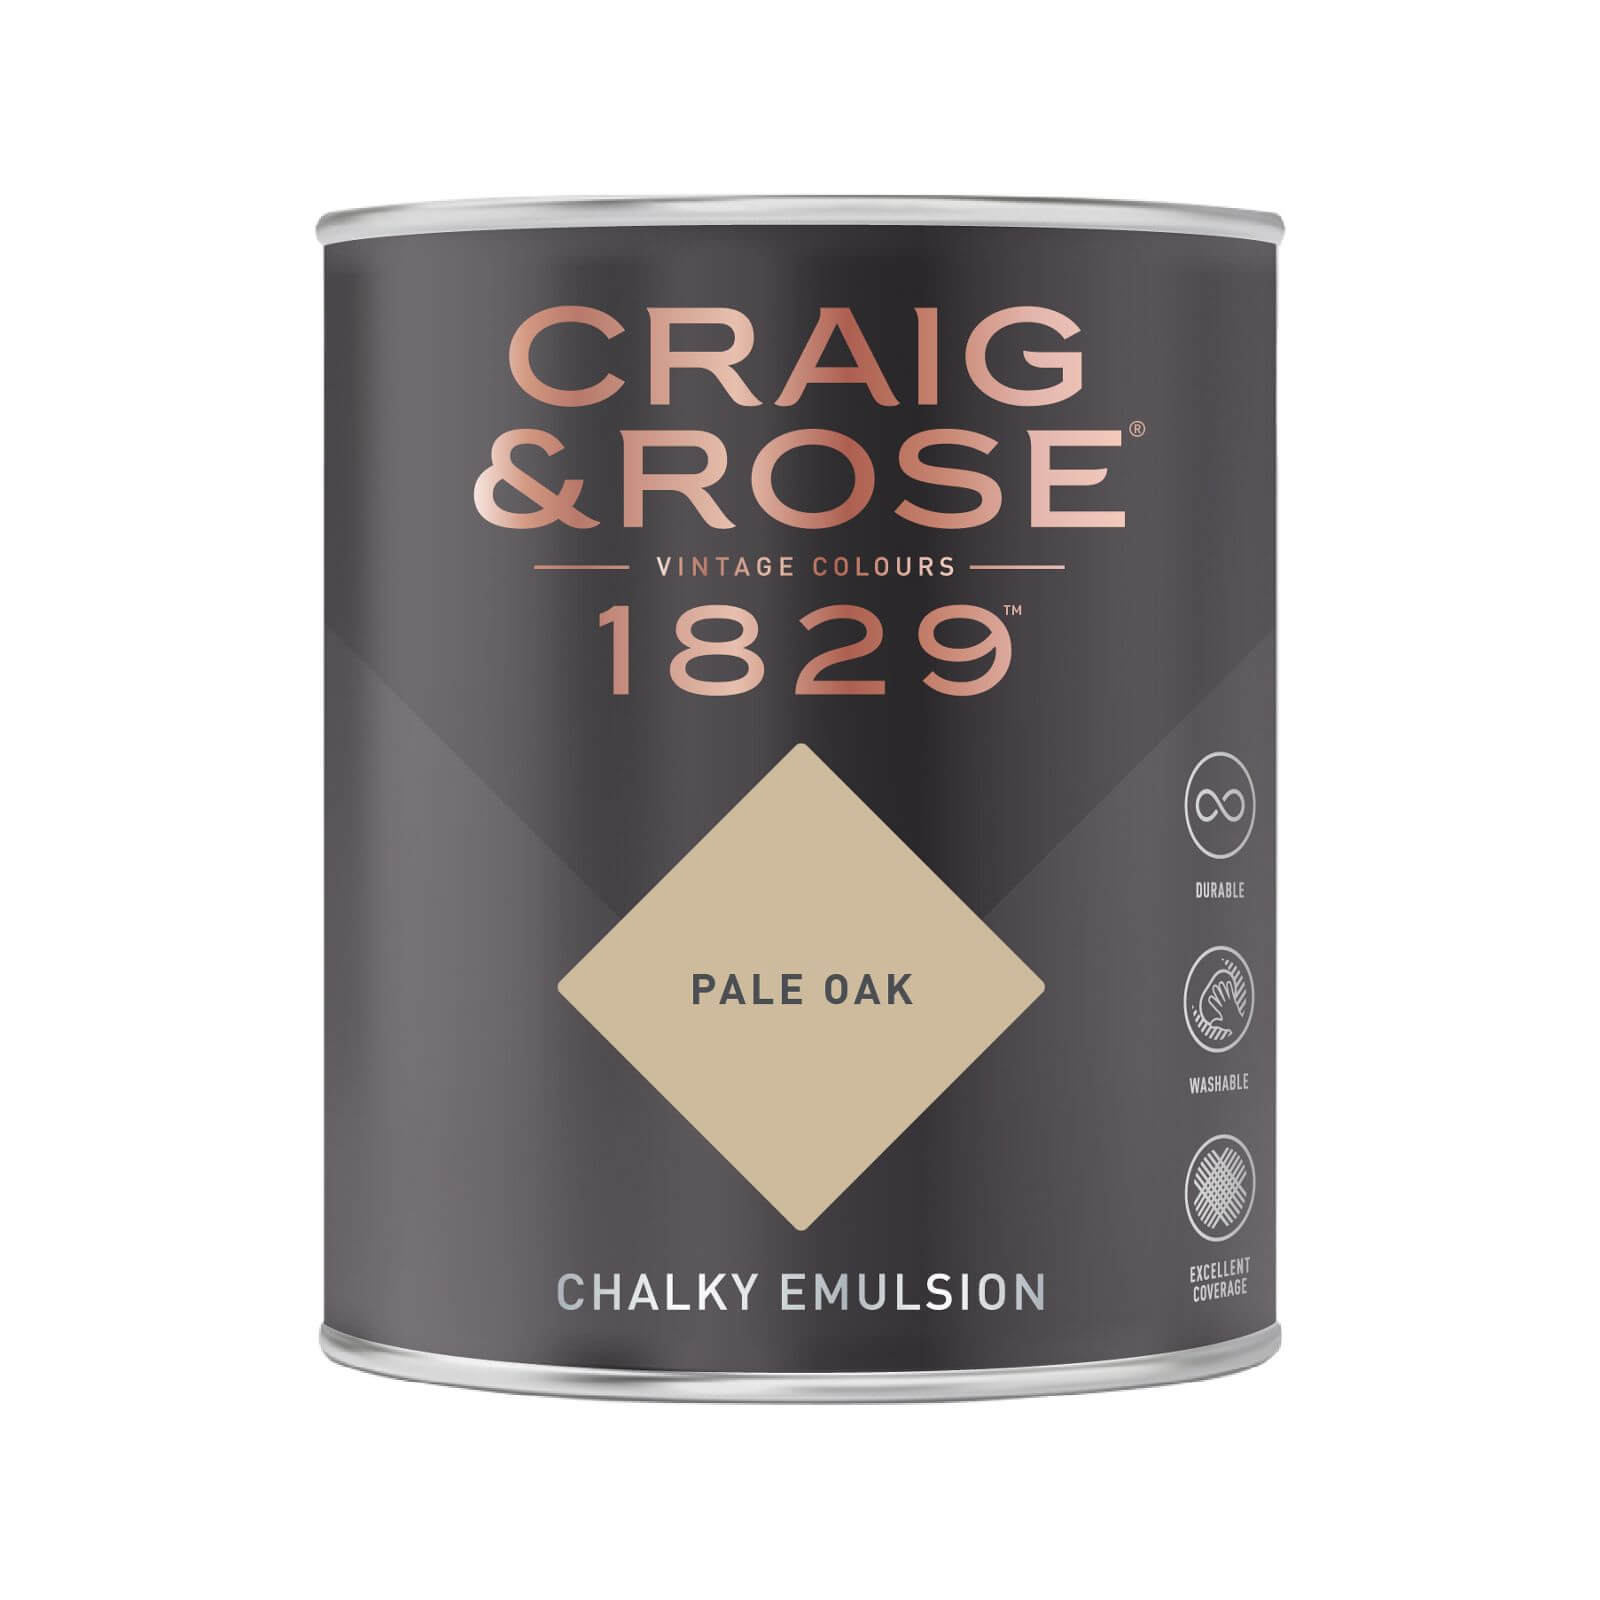 Craig & Rose 1829 Chalky Emulsion Paint Pale Oak - 750ml